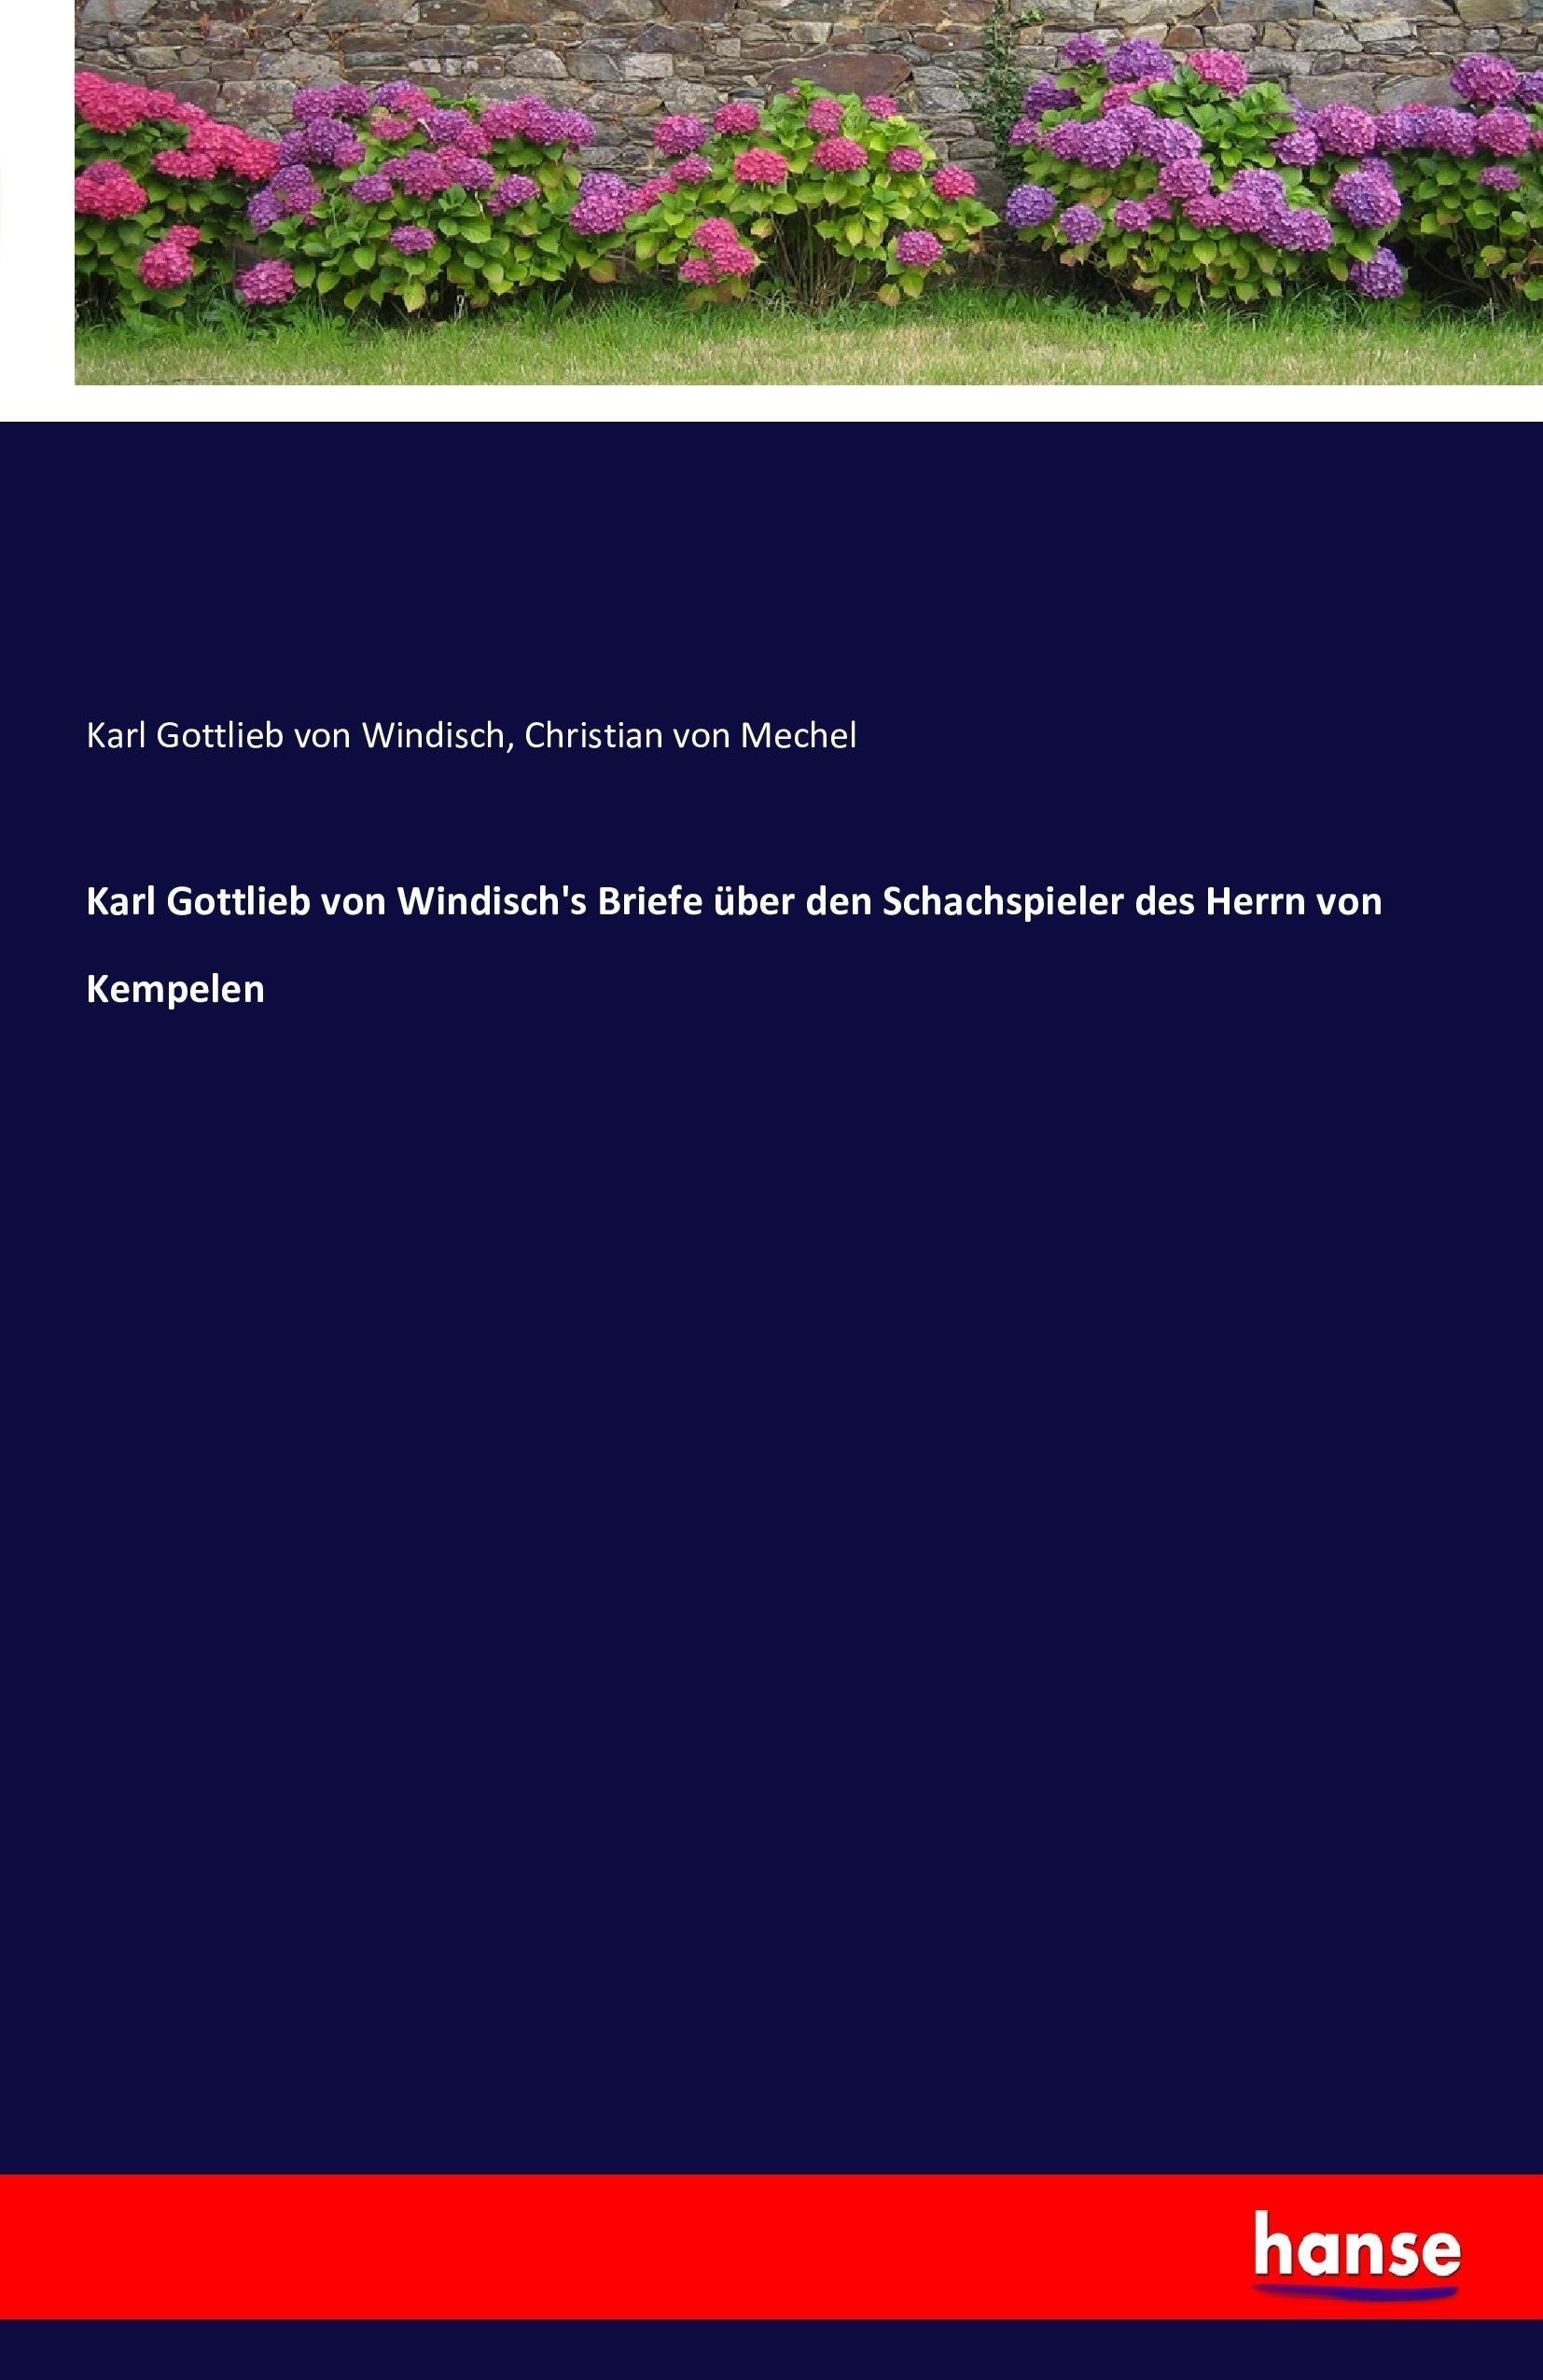 Karl Gottlieb von Windisch s Briefe ueber den Schachspieler des Herrn von Kempelen - Windisch, Karl Gottlieb von Mechel, Christian von